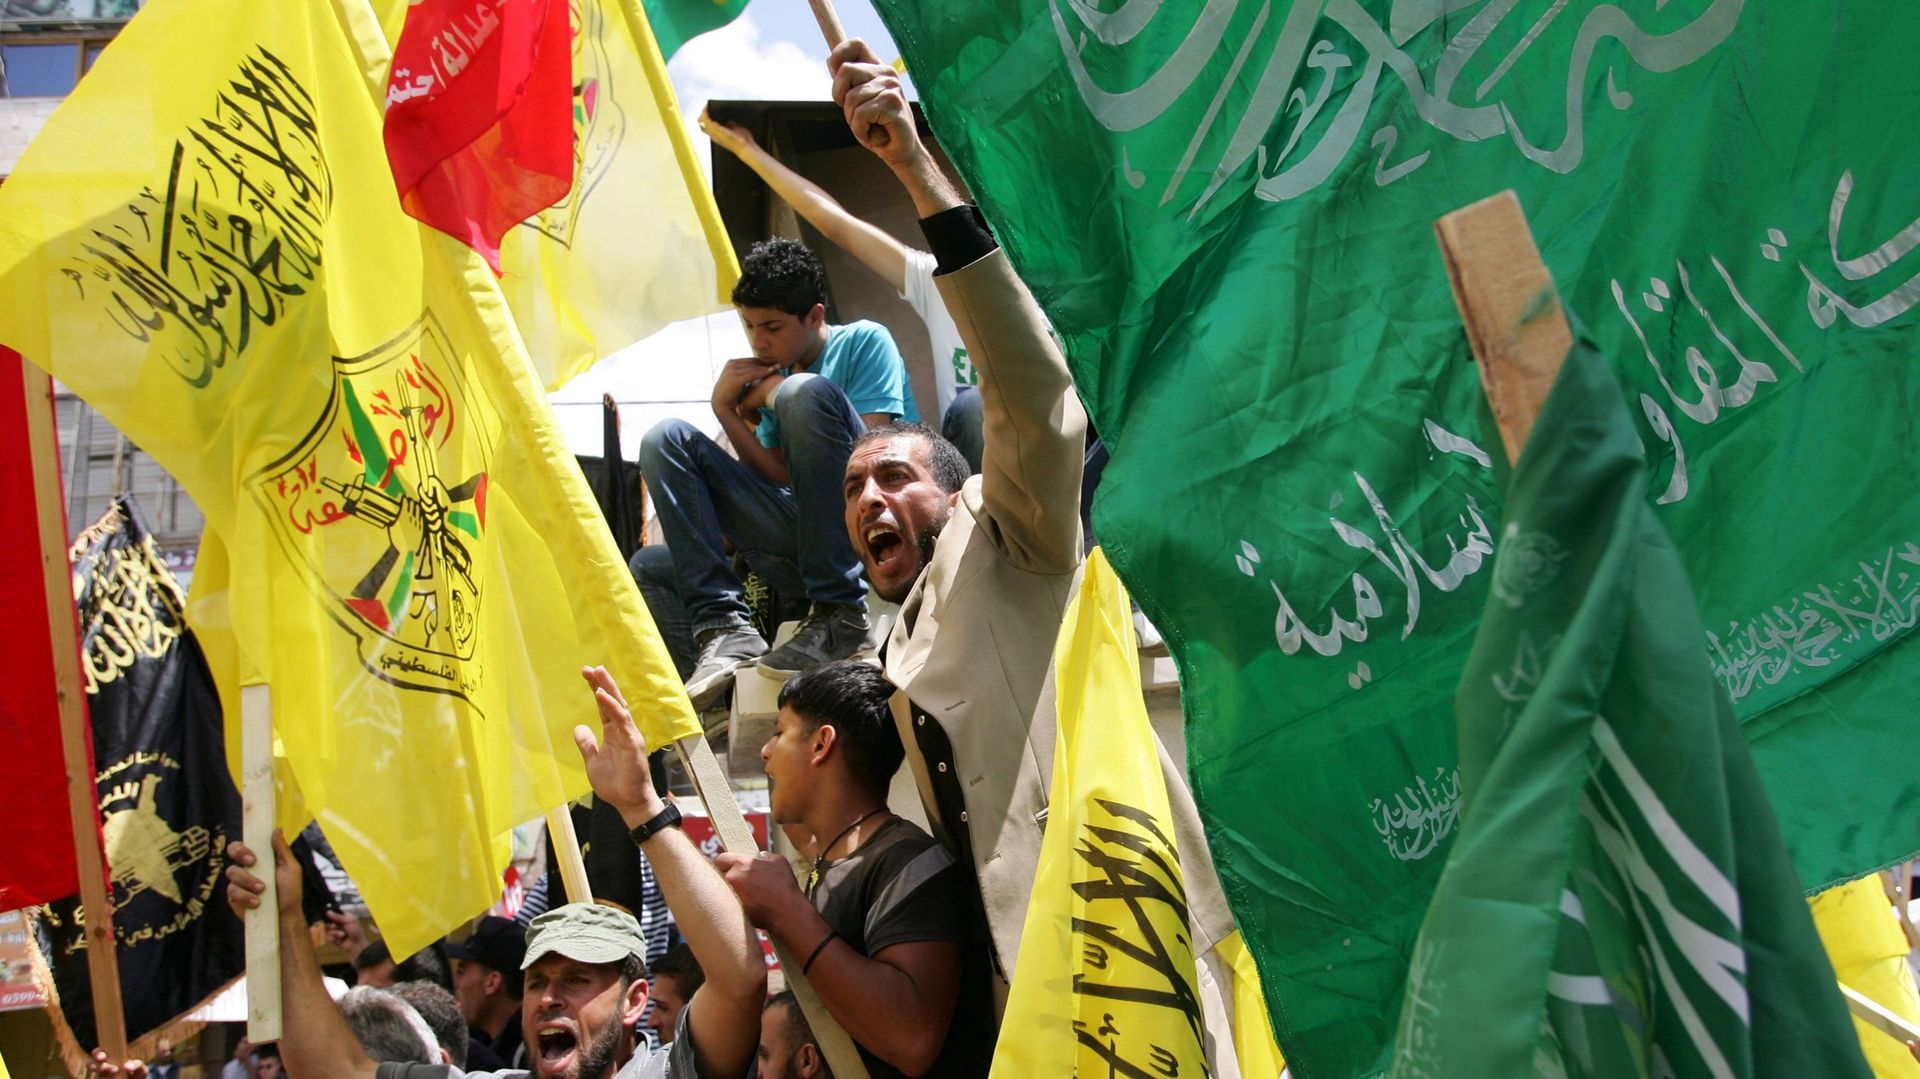 Palestiniens Fatah Et Hamas Daccord Sur Les Mécanismes De Réconciliation Rtbfbe